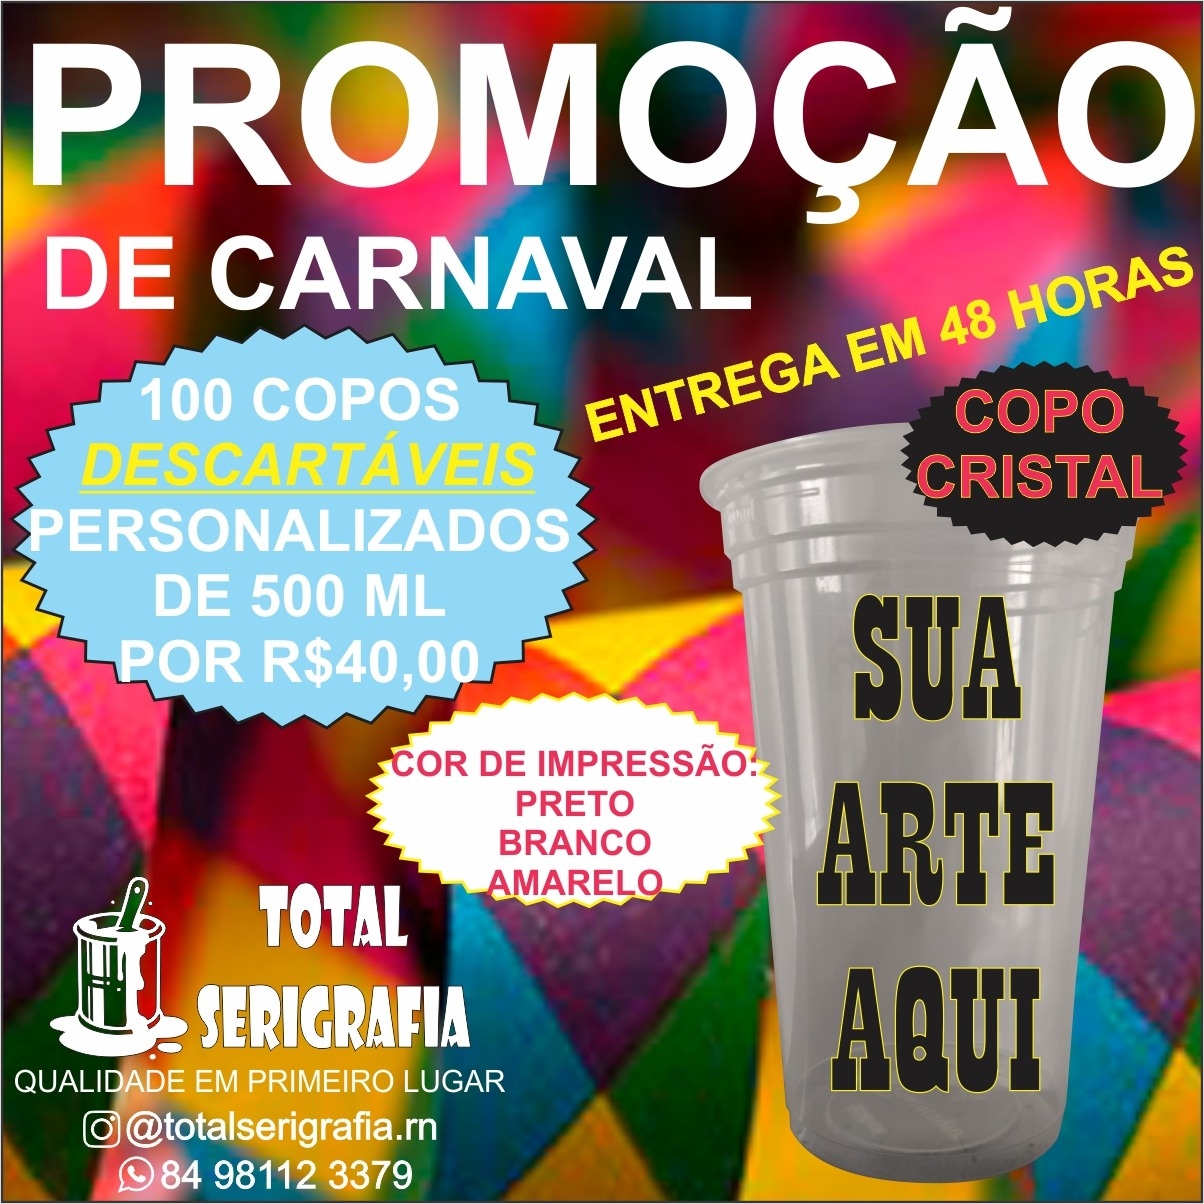 Promoção: Promoção de Carnaval - personalização de 100 copos descartáveis por apenas...